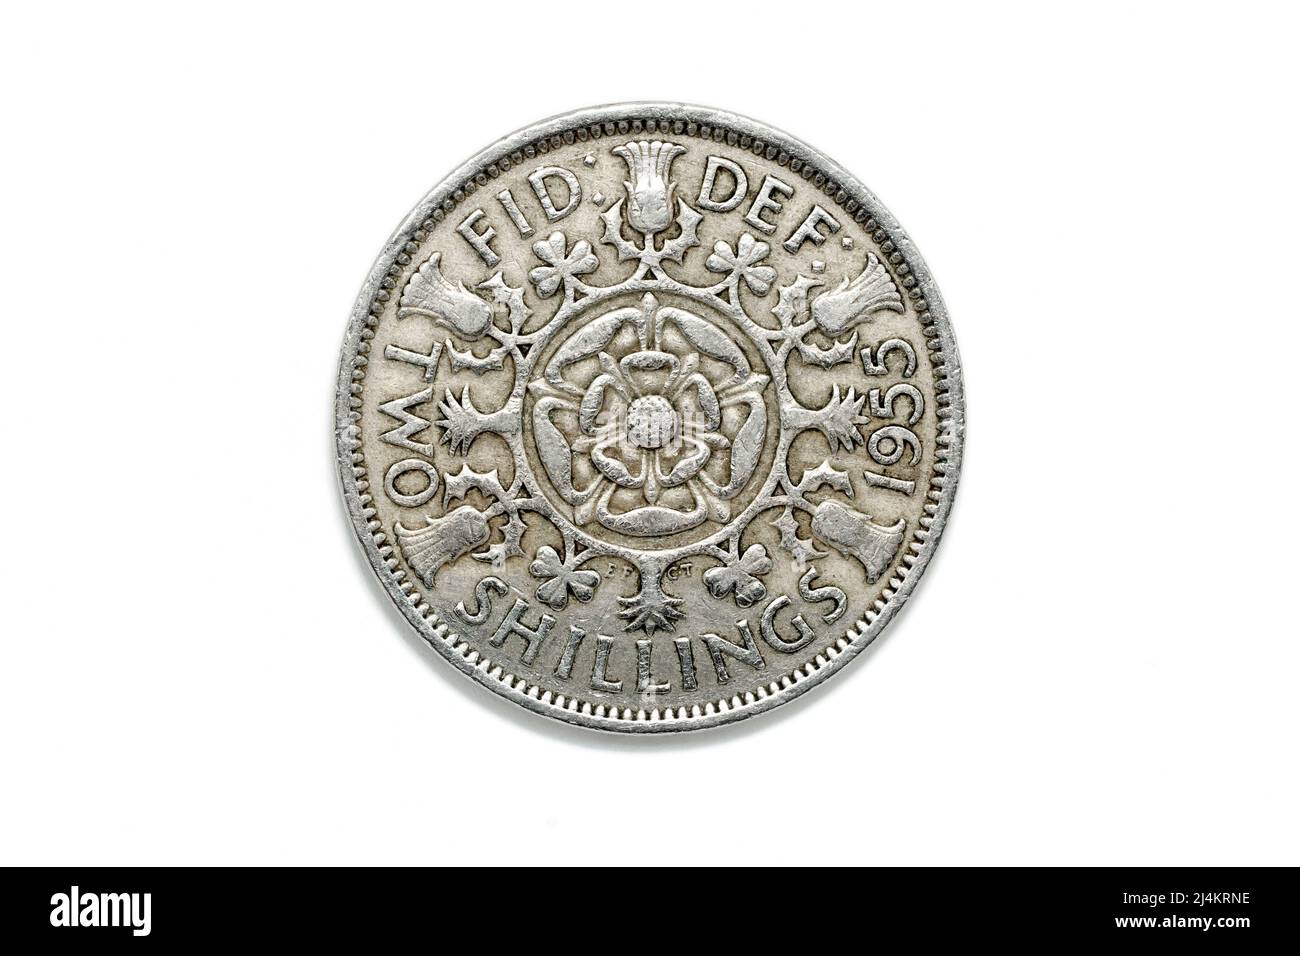 Gros plan montrant le côté queues d'une pièce de deux shilling au Royaume-Uni pré-décimale, deux bob bit ou florin, daté de 1955, isolée sur un fond blanc. Banque D'Images